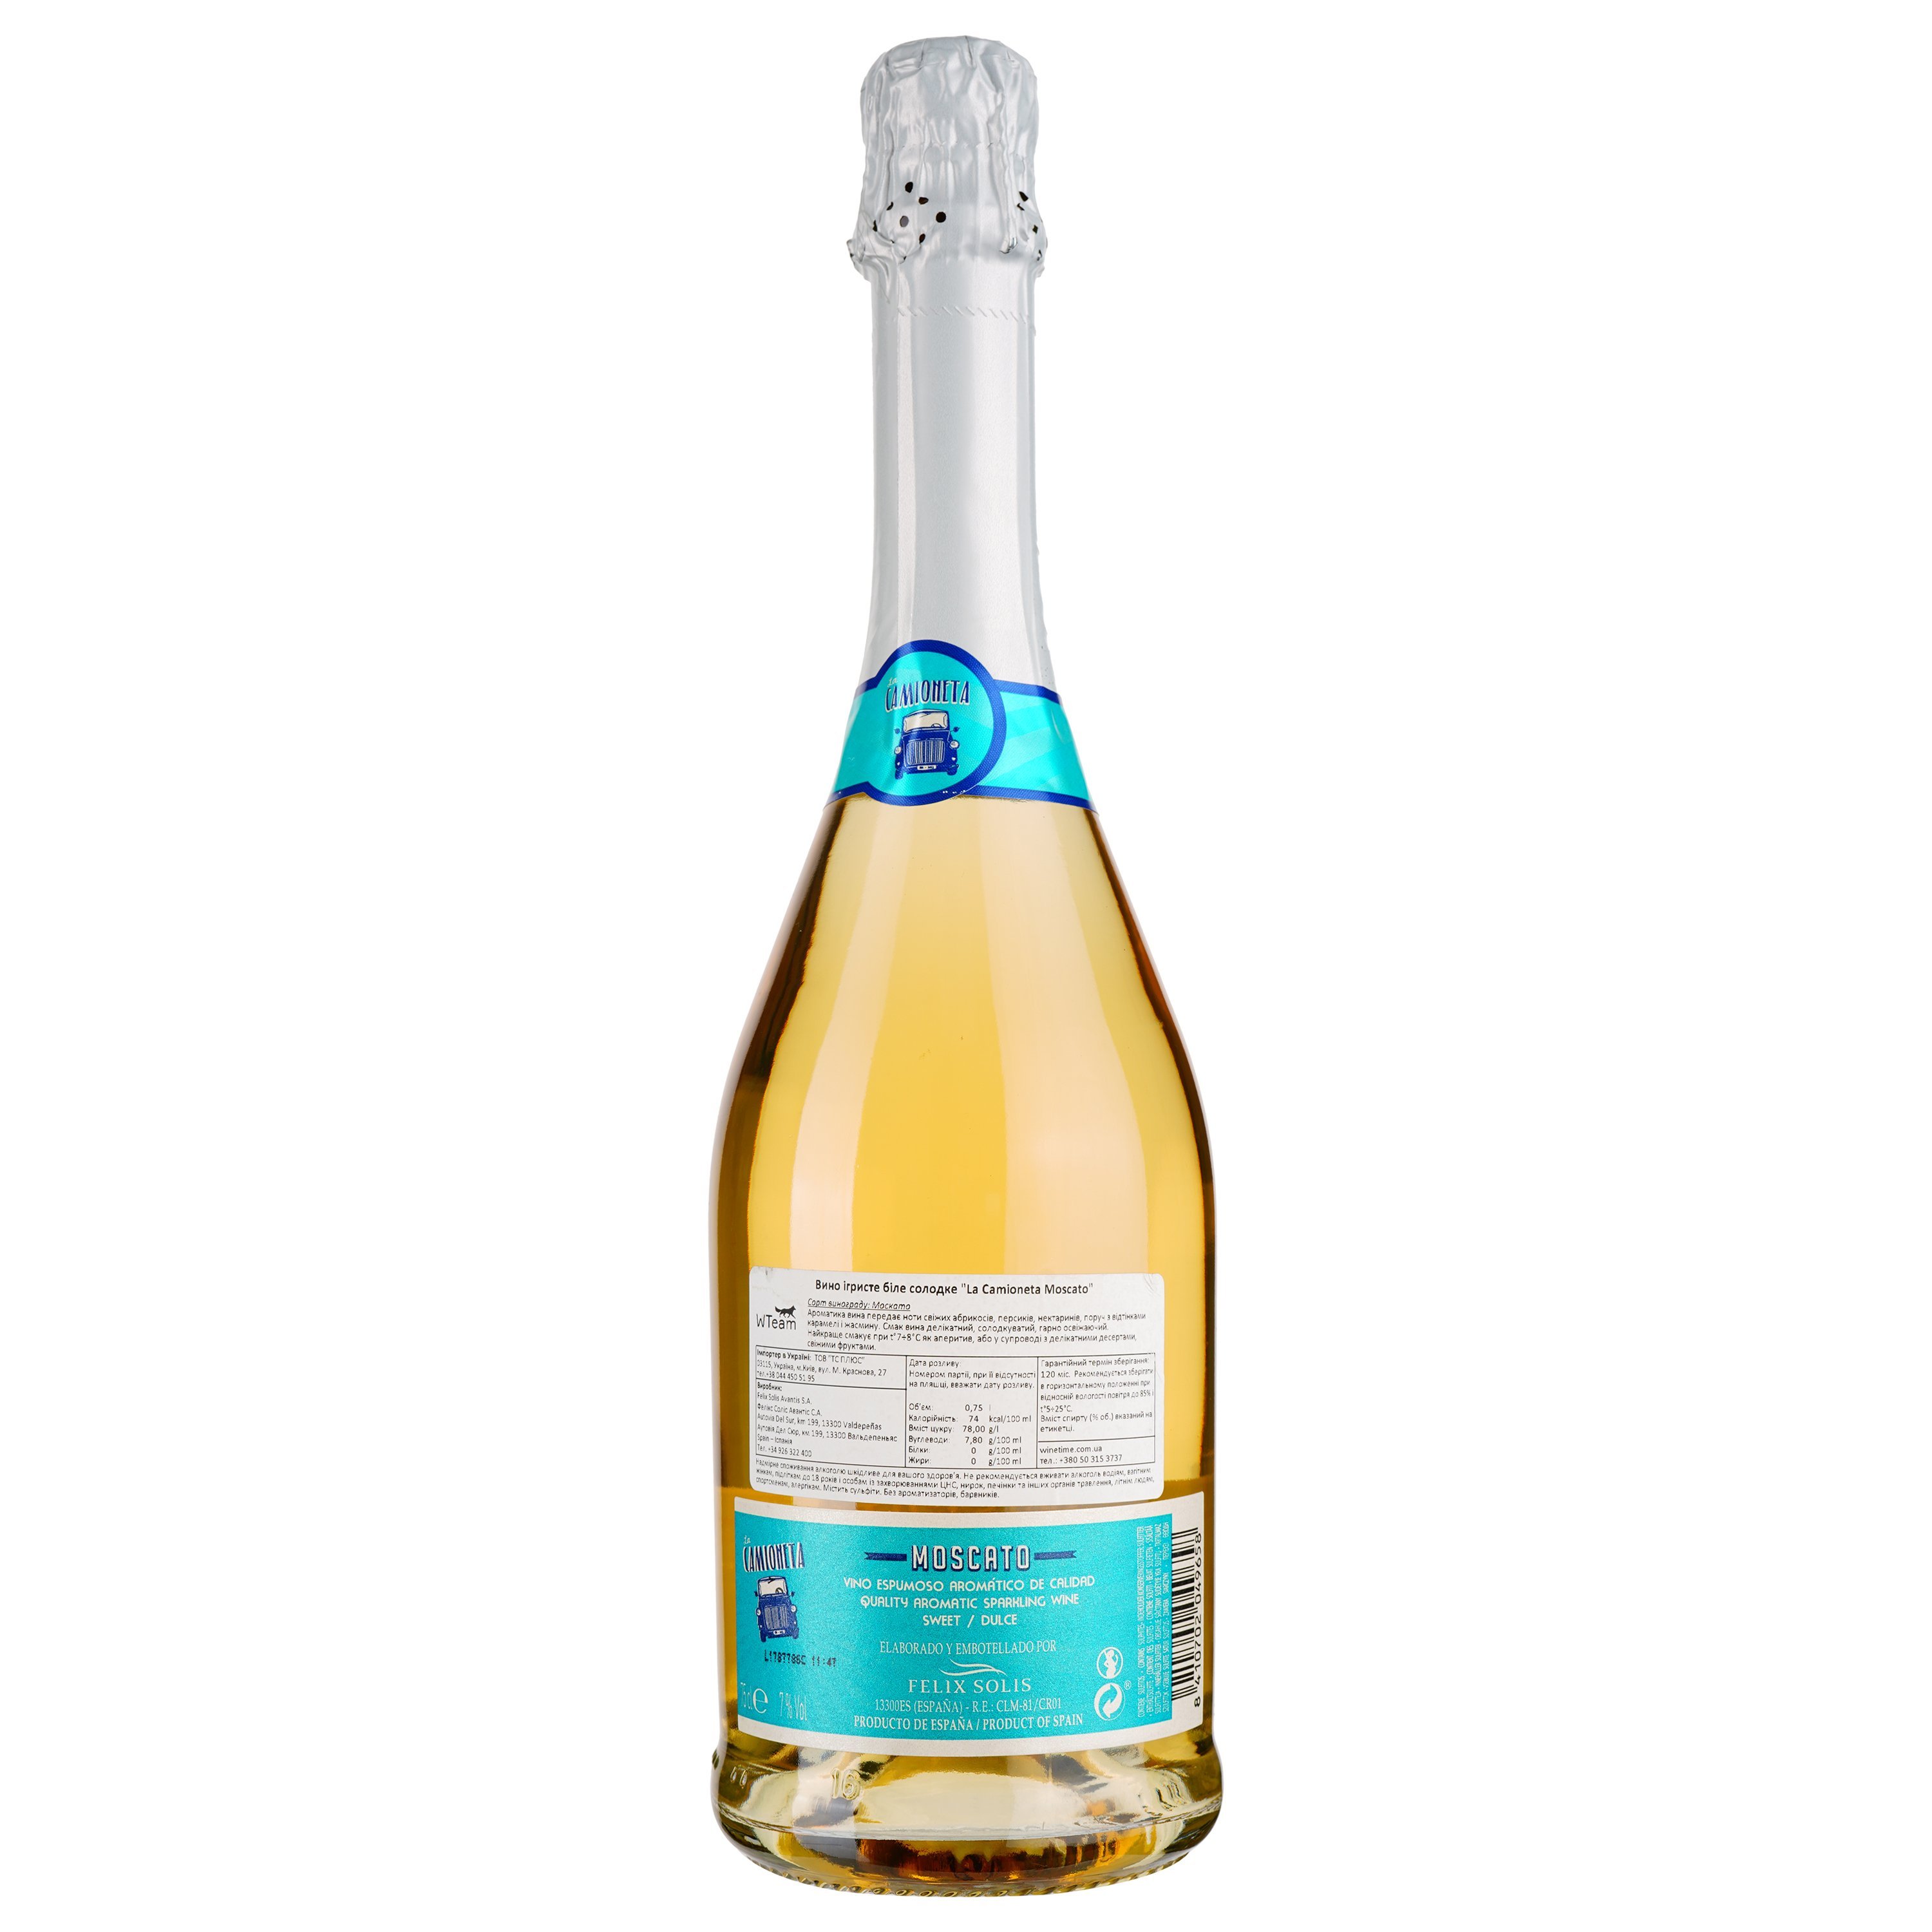 Игристое вино Felix Solis Avantis La Camioneta Moscato, белое, сладкое, 7%, 0,75 л - фото 2